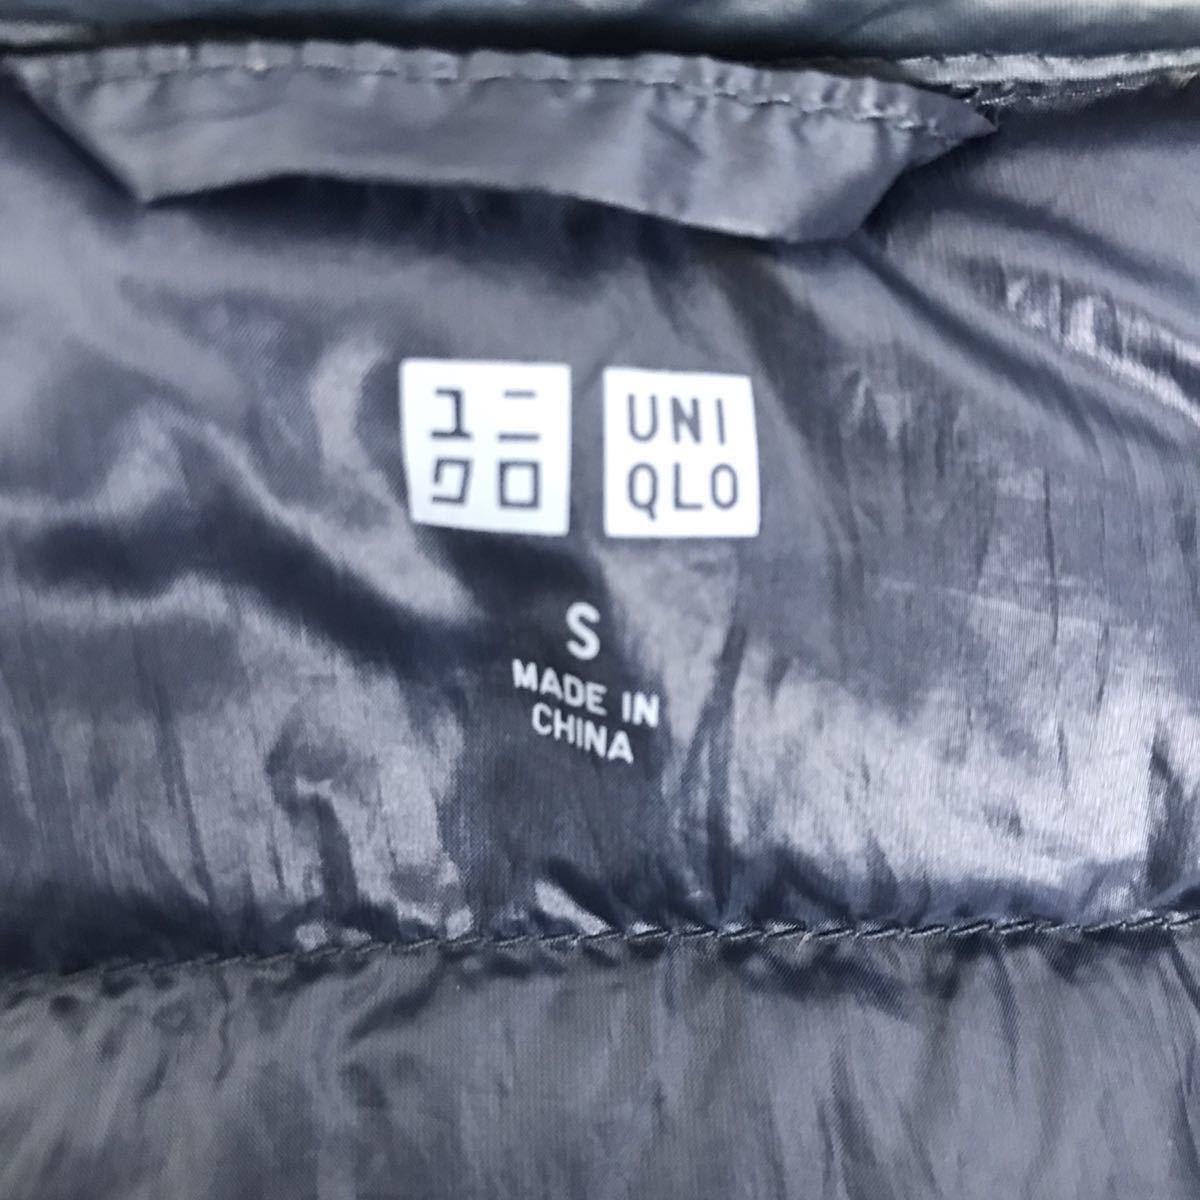 UNIQLO ユニクロ ウルトラライト ダウン パーカー 紺 ネイビー Sサイズ レディース ジャケット トラベル アウトドア ウェア 防寒